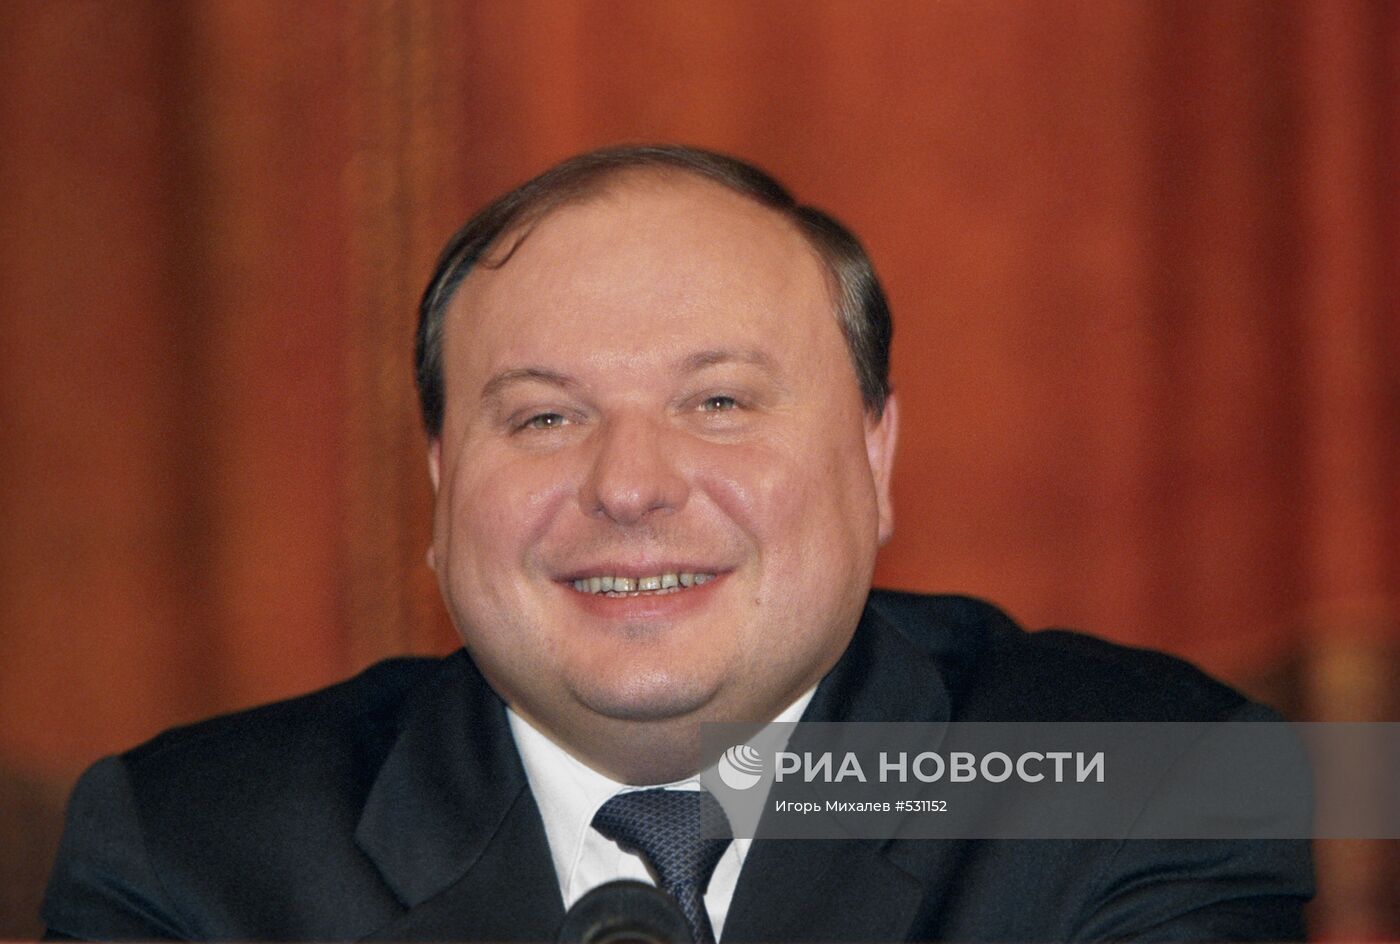 Политик, советский и российский экономист Егор Гайдар